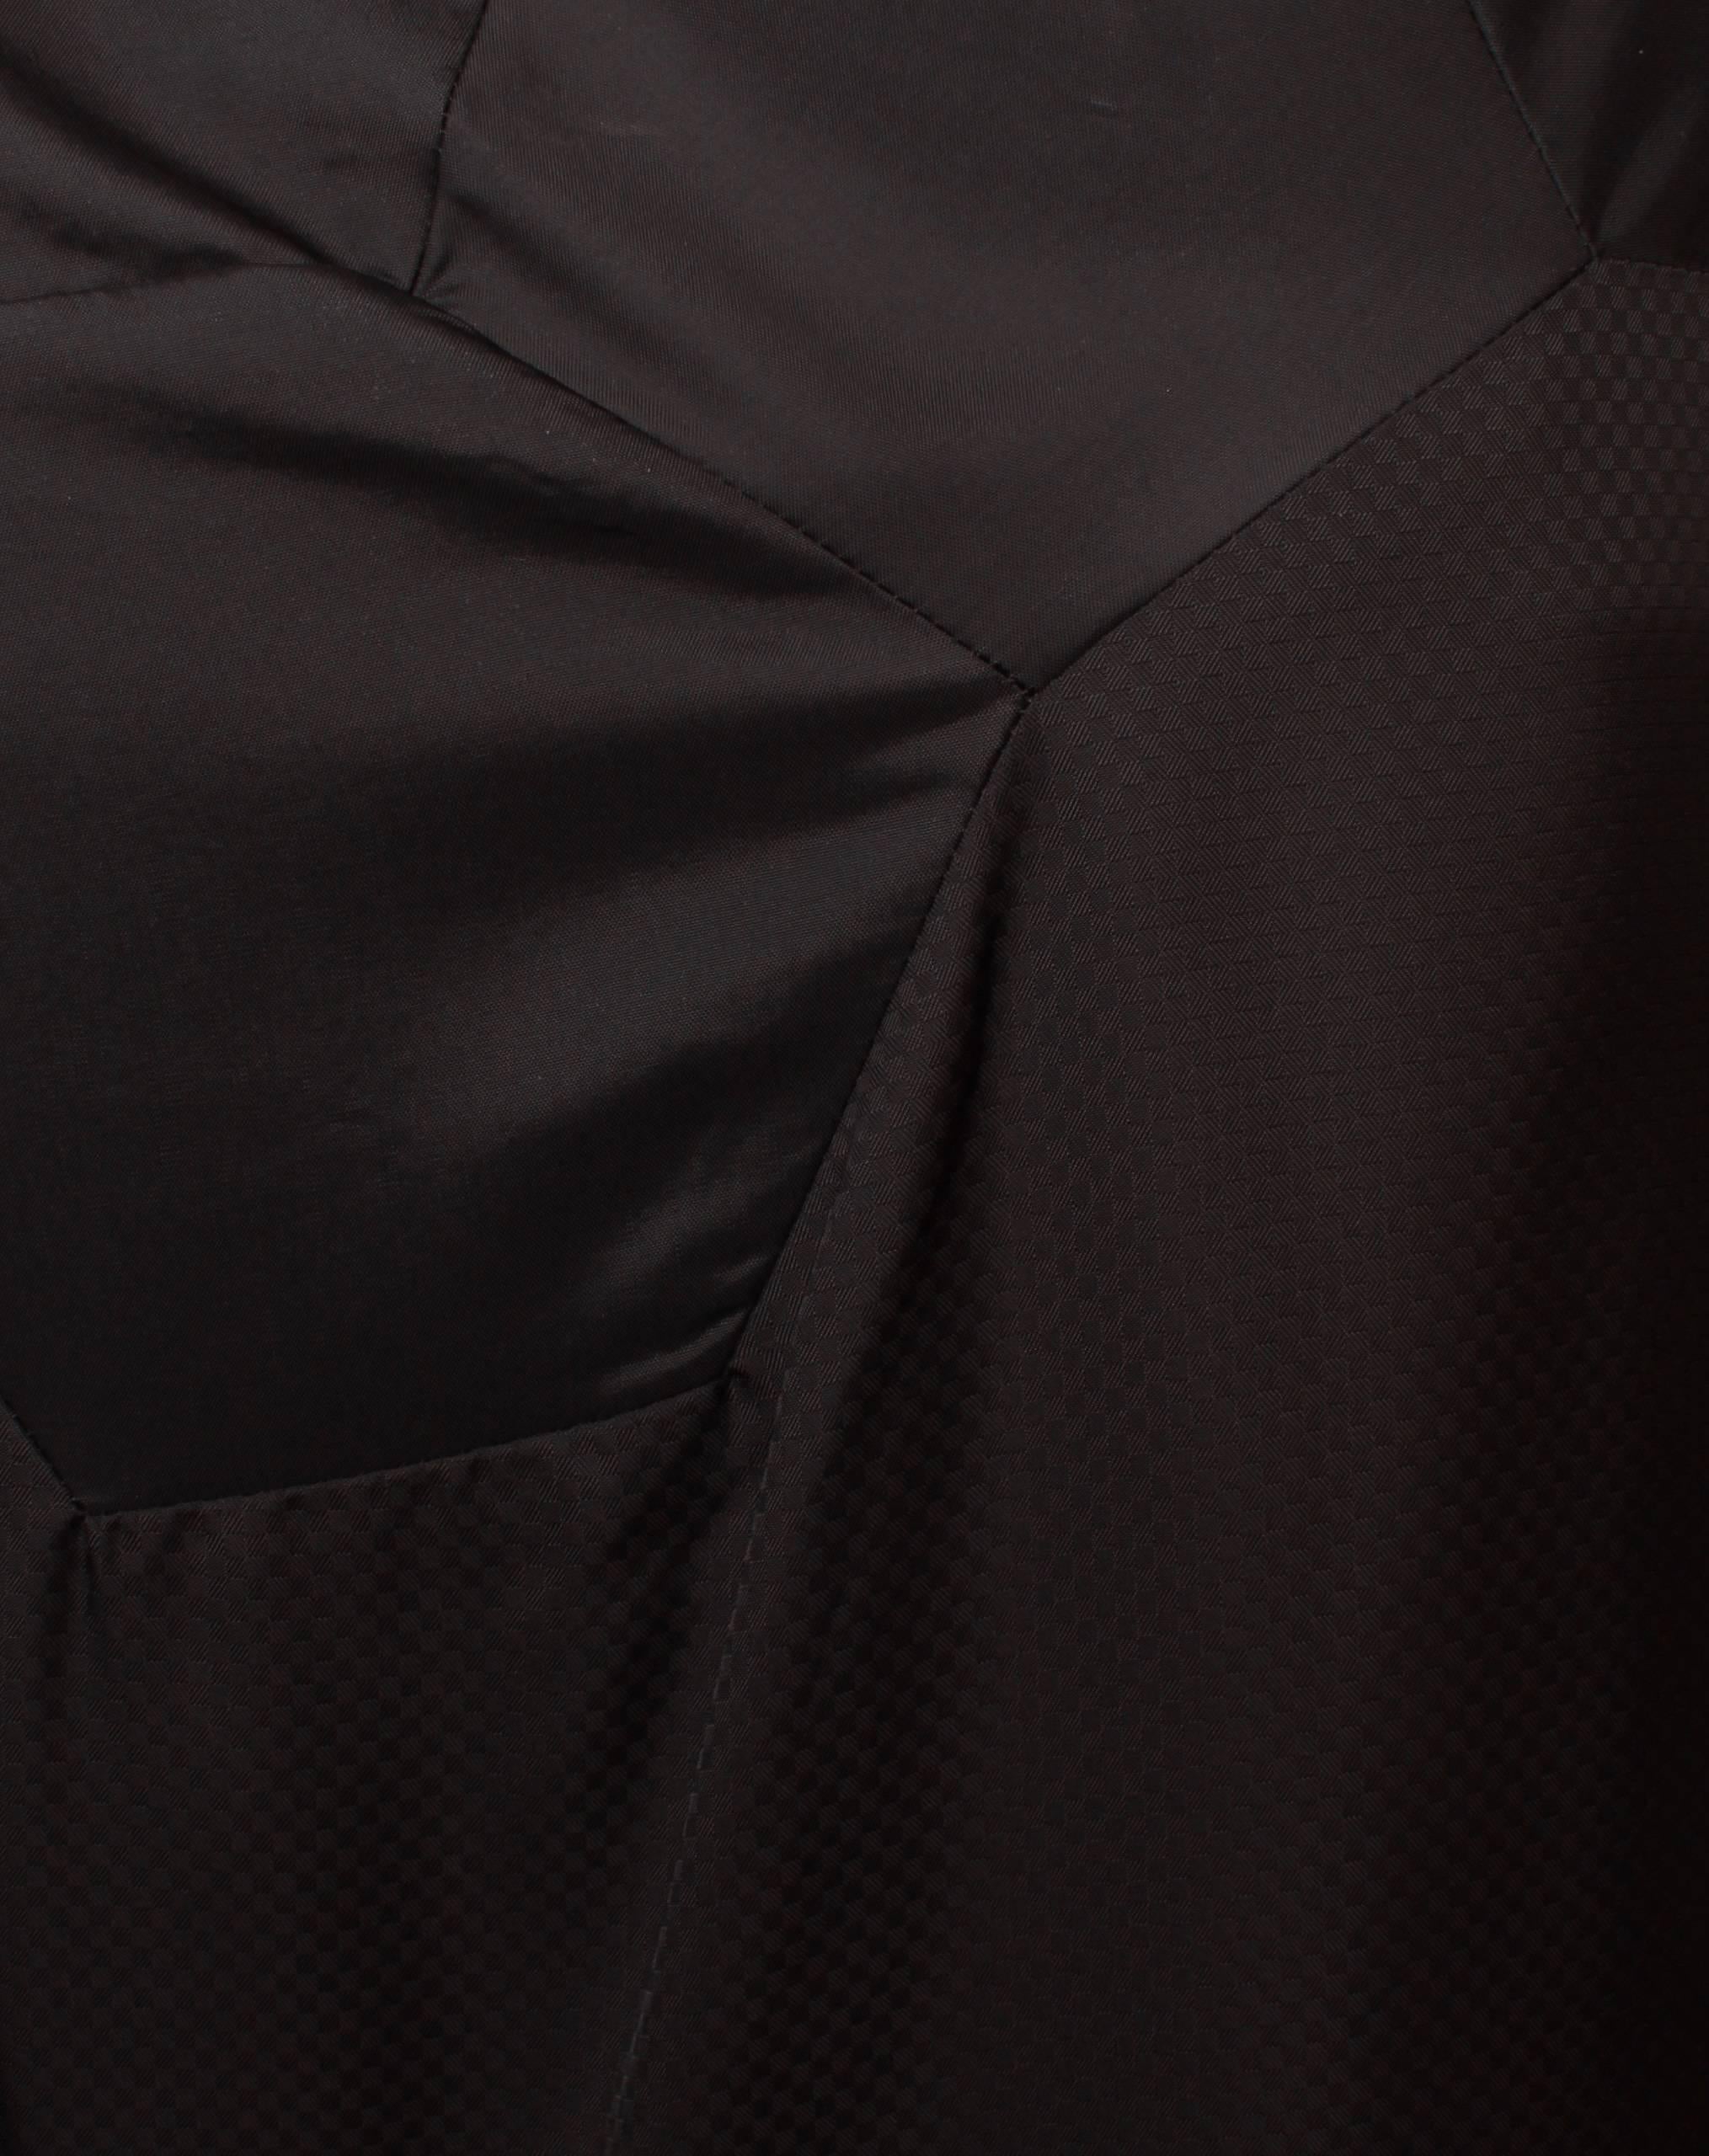 Comme des Garcons Geometric Panel Black Dress S For Sale 1